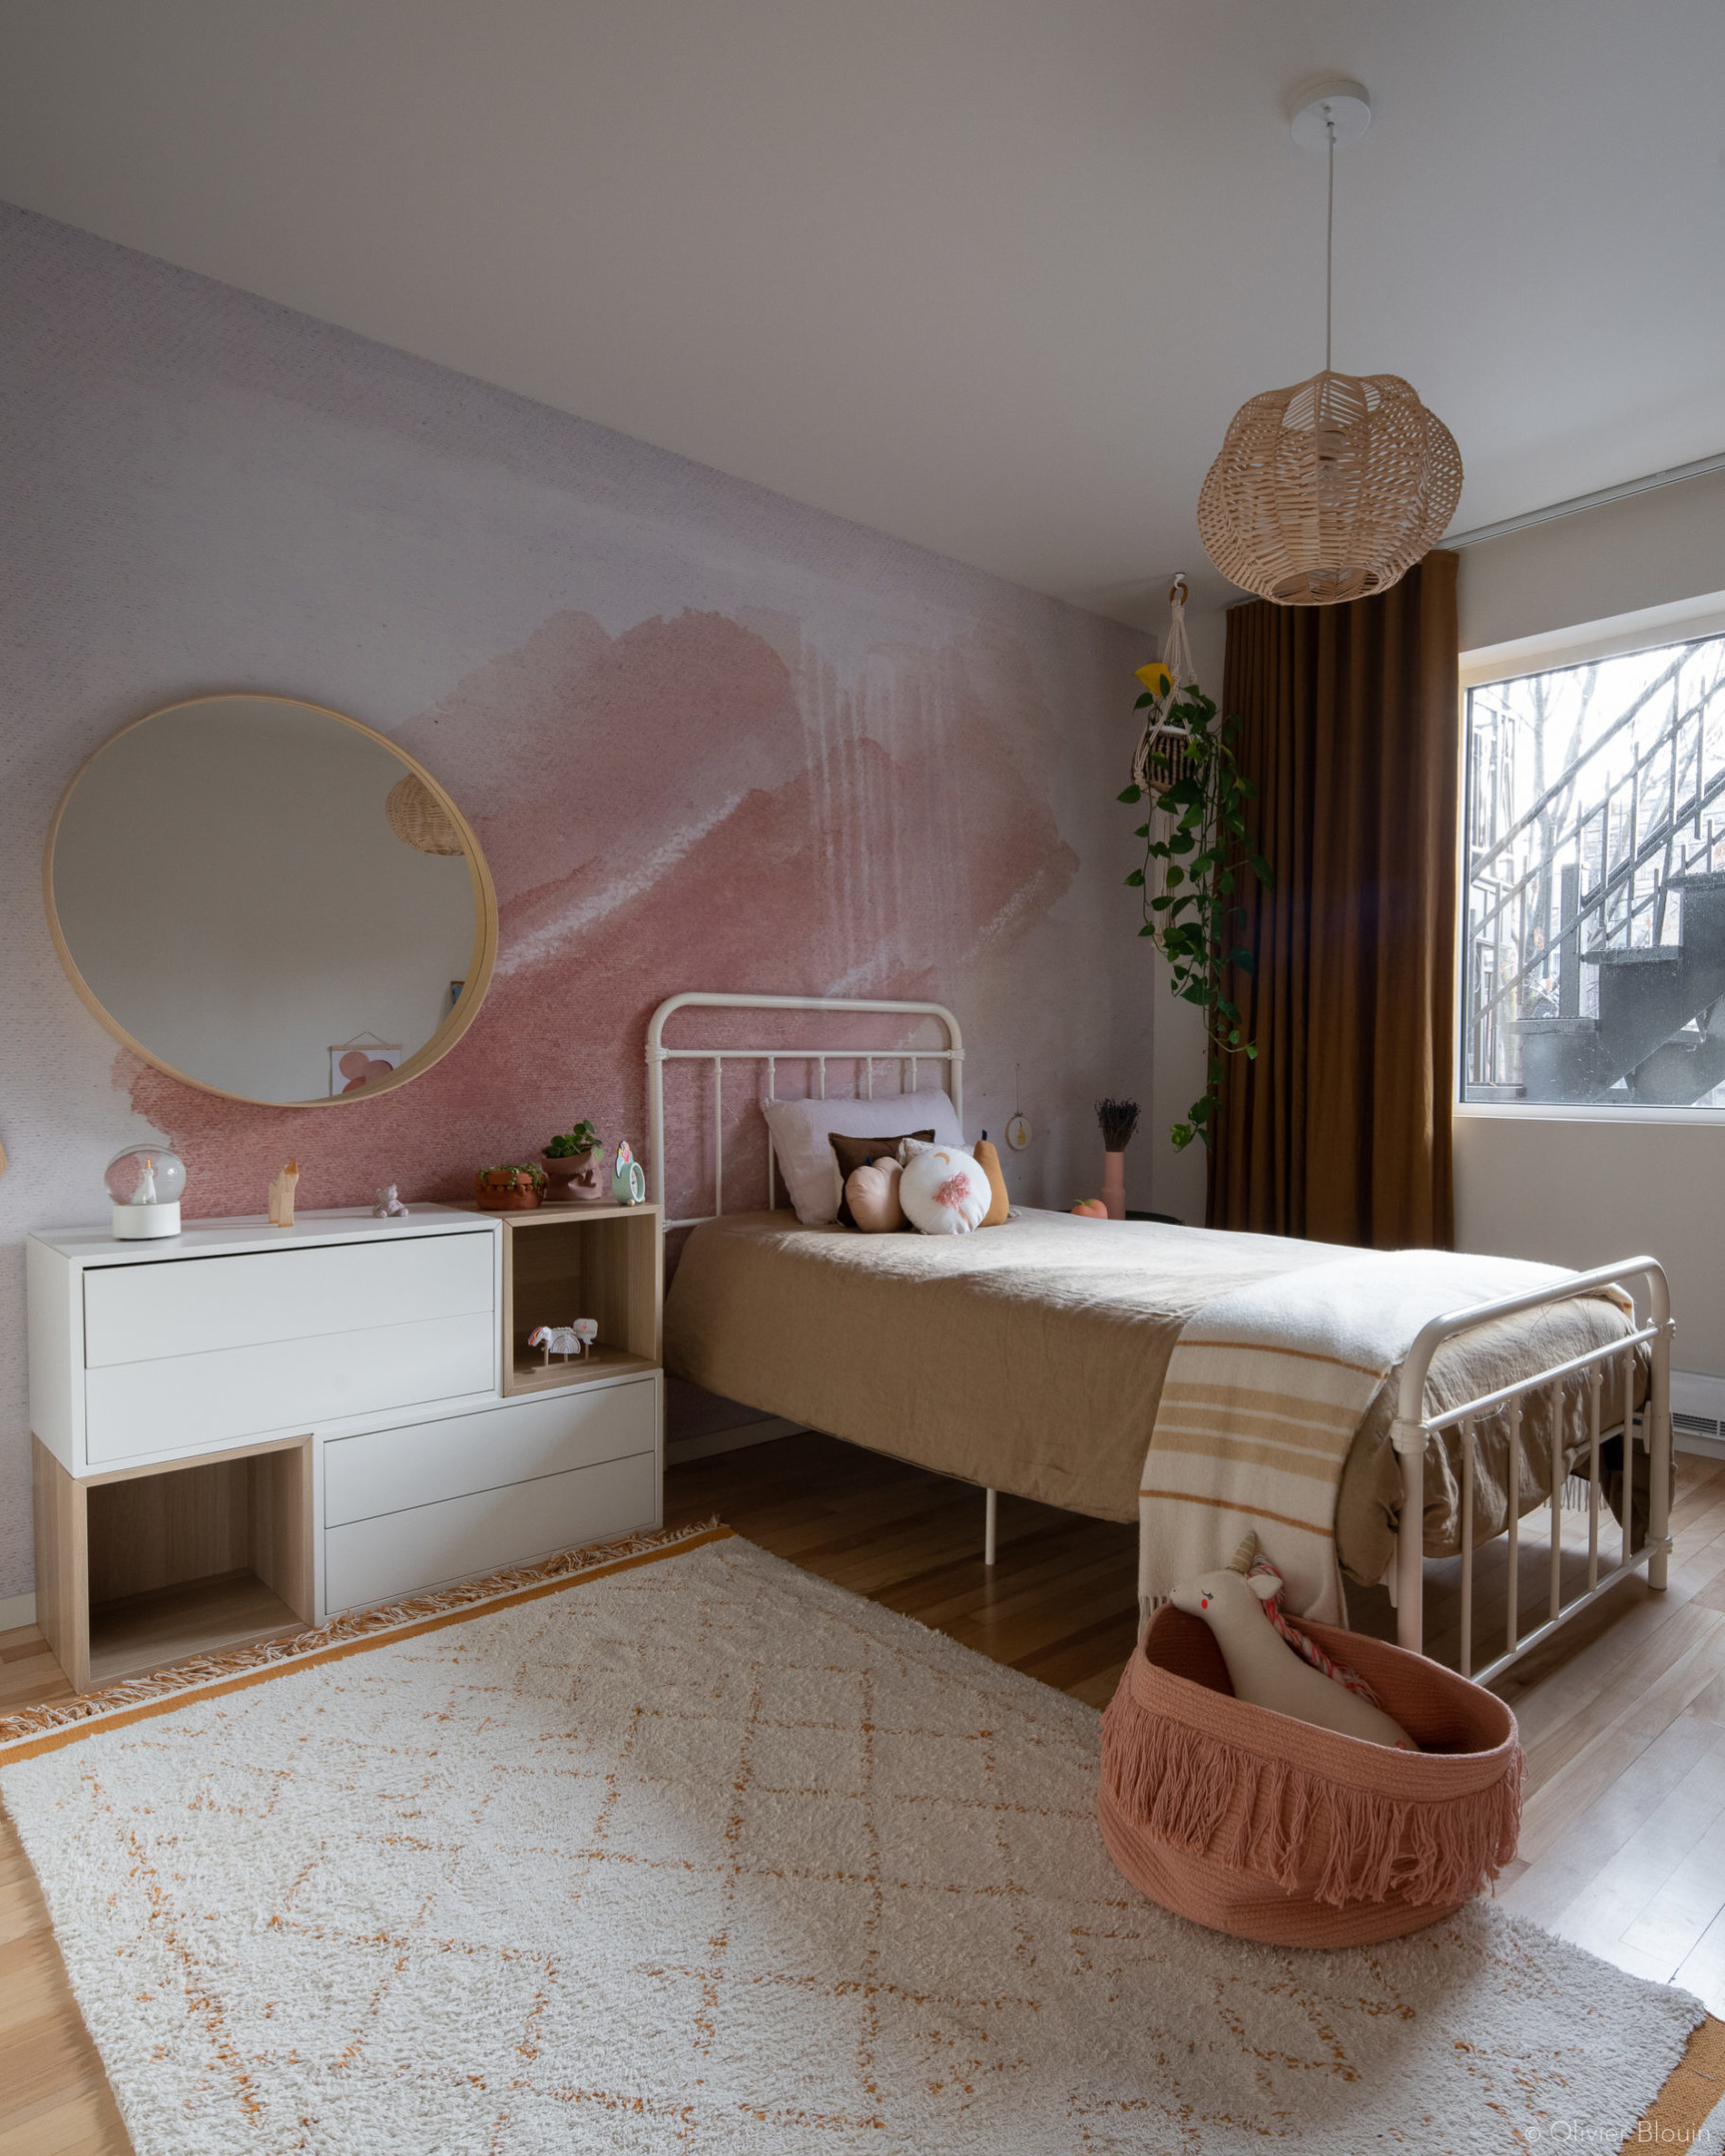 Phòng ngủ của bé gái với tone màu trắng - hồng phấn ngọt ngào, nữ tính. Bên cạnh chiếc giường là tấm thảm mềm mại trên sàn gỗ ấm áp, có cả bàn phấn và gương soi dùng được từ khi bé đến lúc tuổi teen cơ đấy!